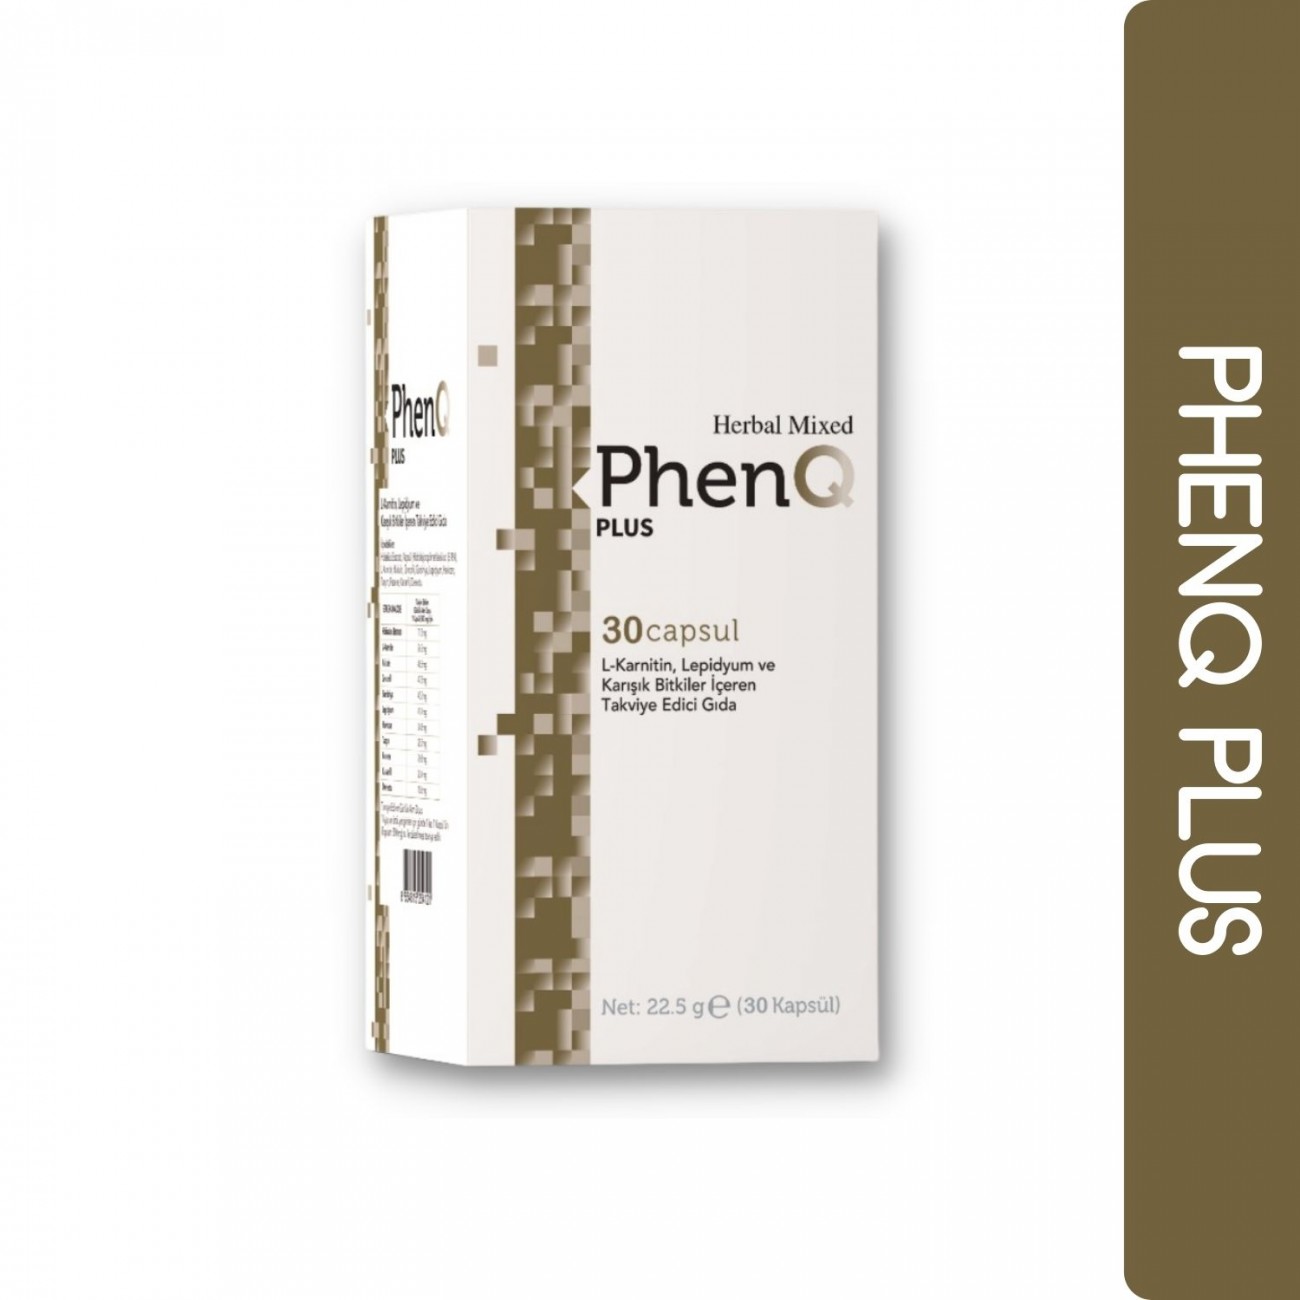 PhenQ Plus Zayıflamaya Yardımcı Takviye Edici Gıda 30 Kapsül - Yeni Başlayanlar İçin